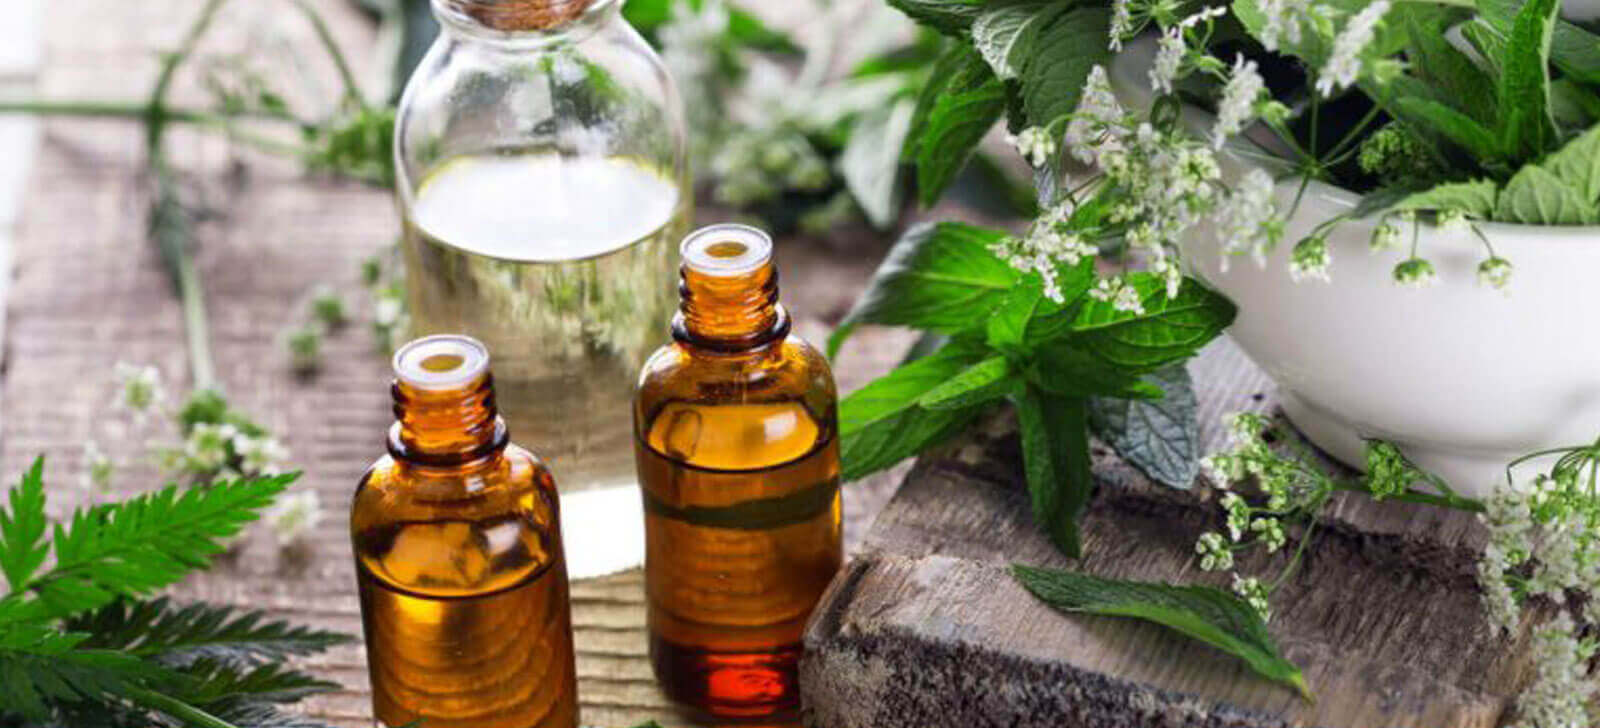 Homeopatia: saiba o que é, como funciona e para que serve